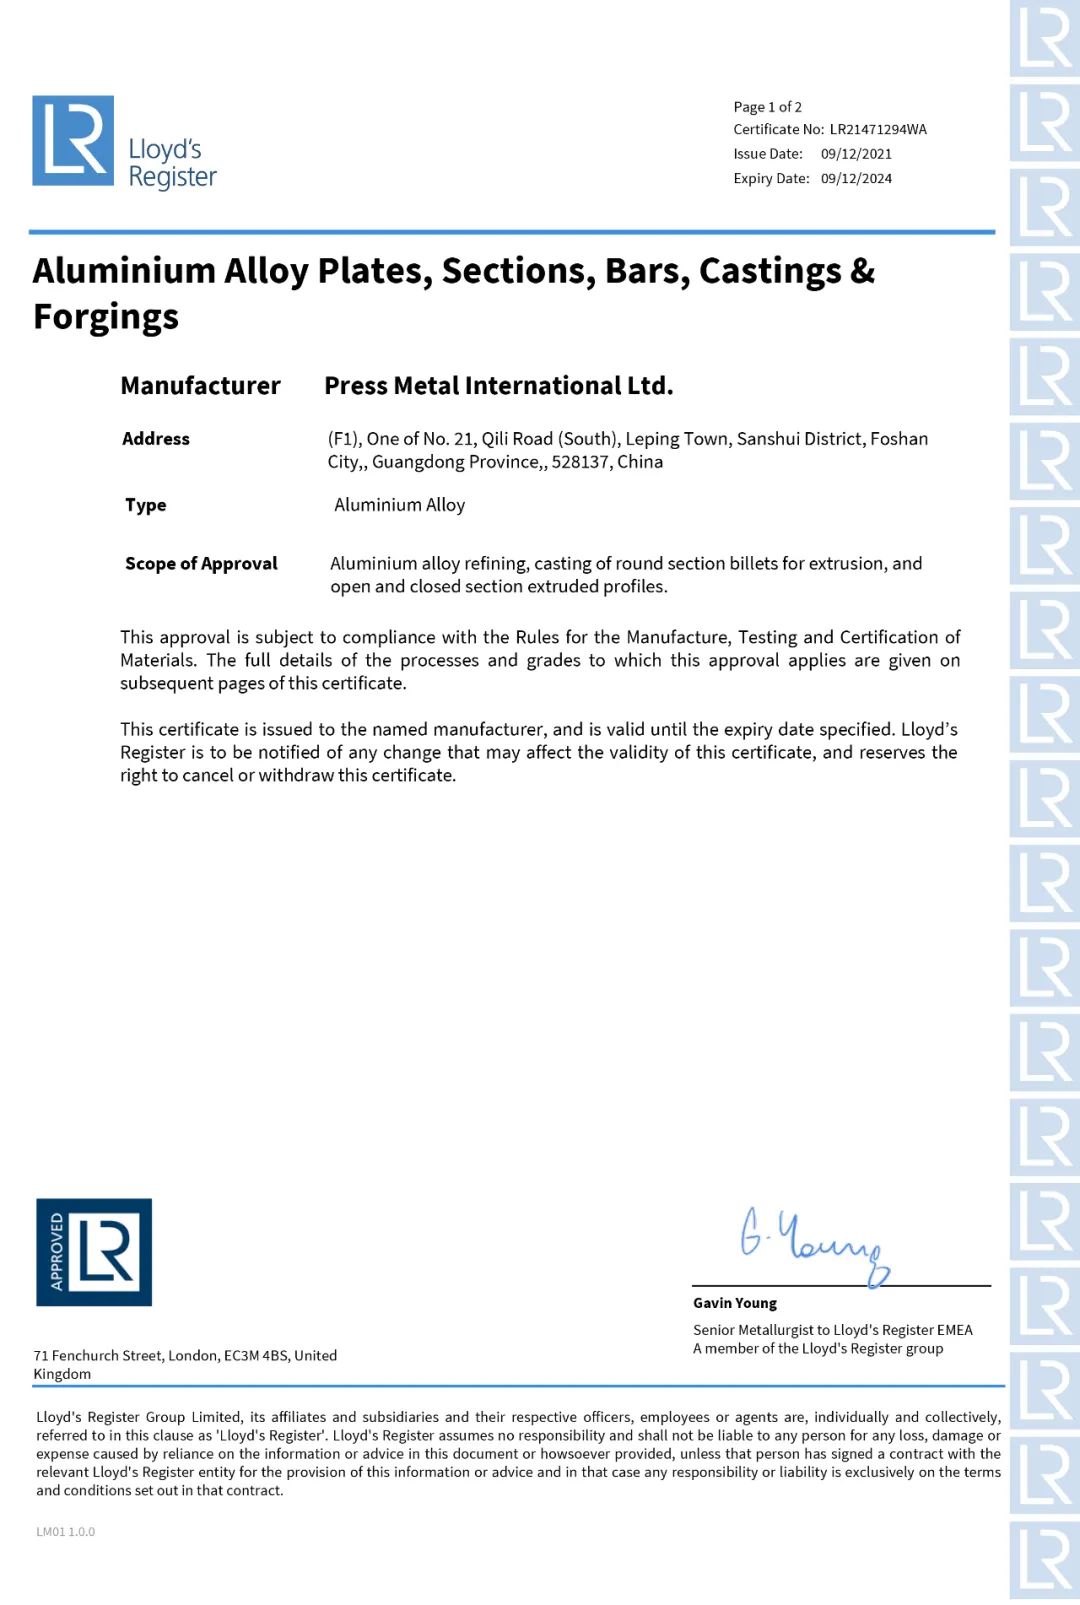 澳美铝业获得英国劳氏船级社工厂认可证书